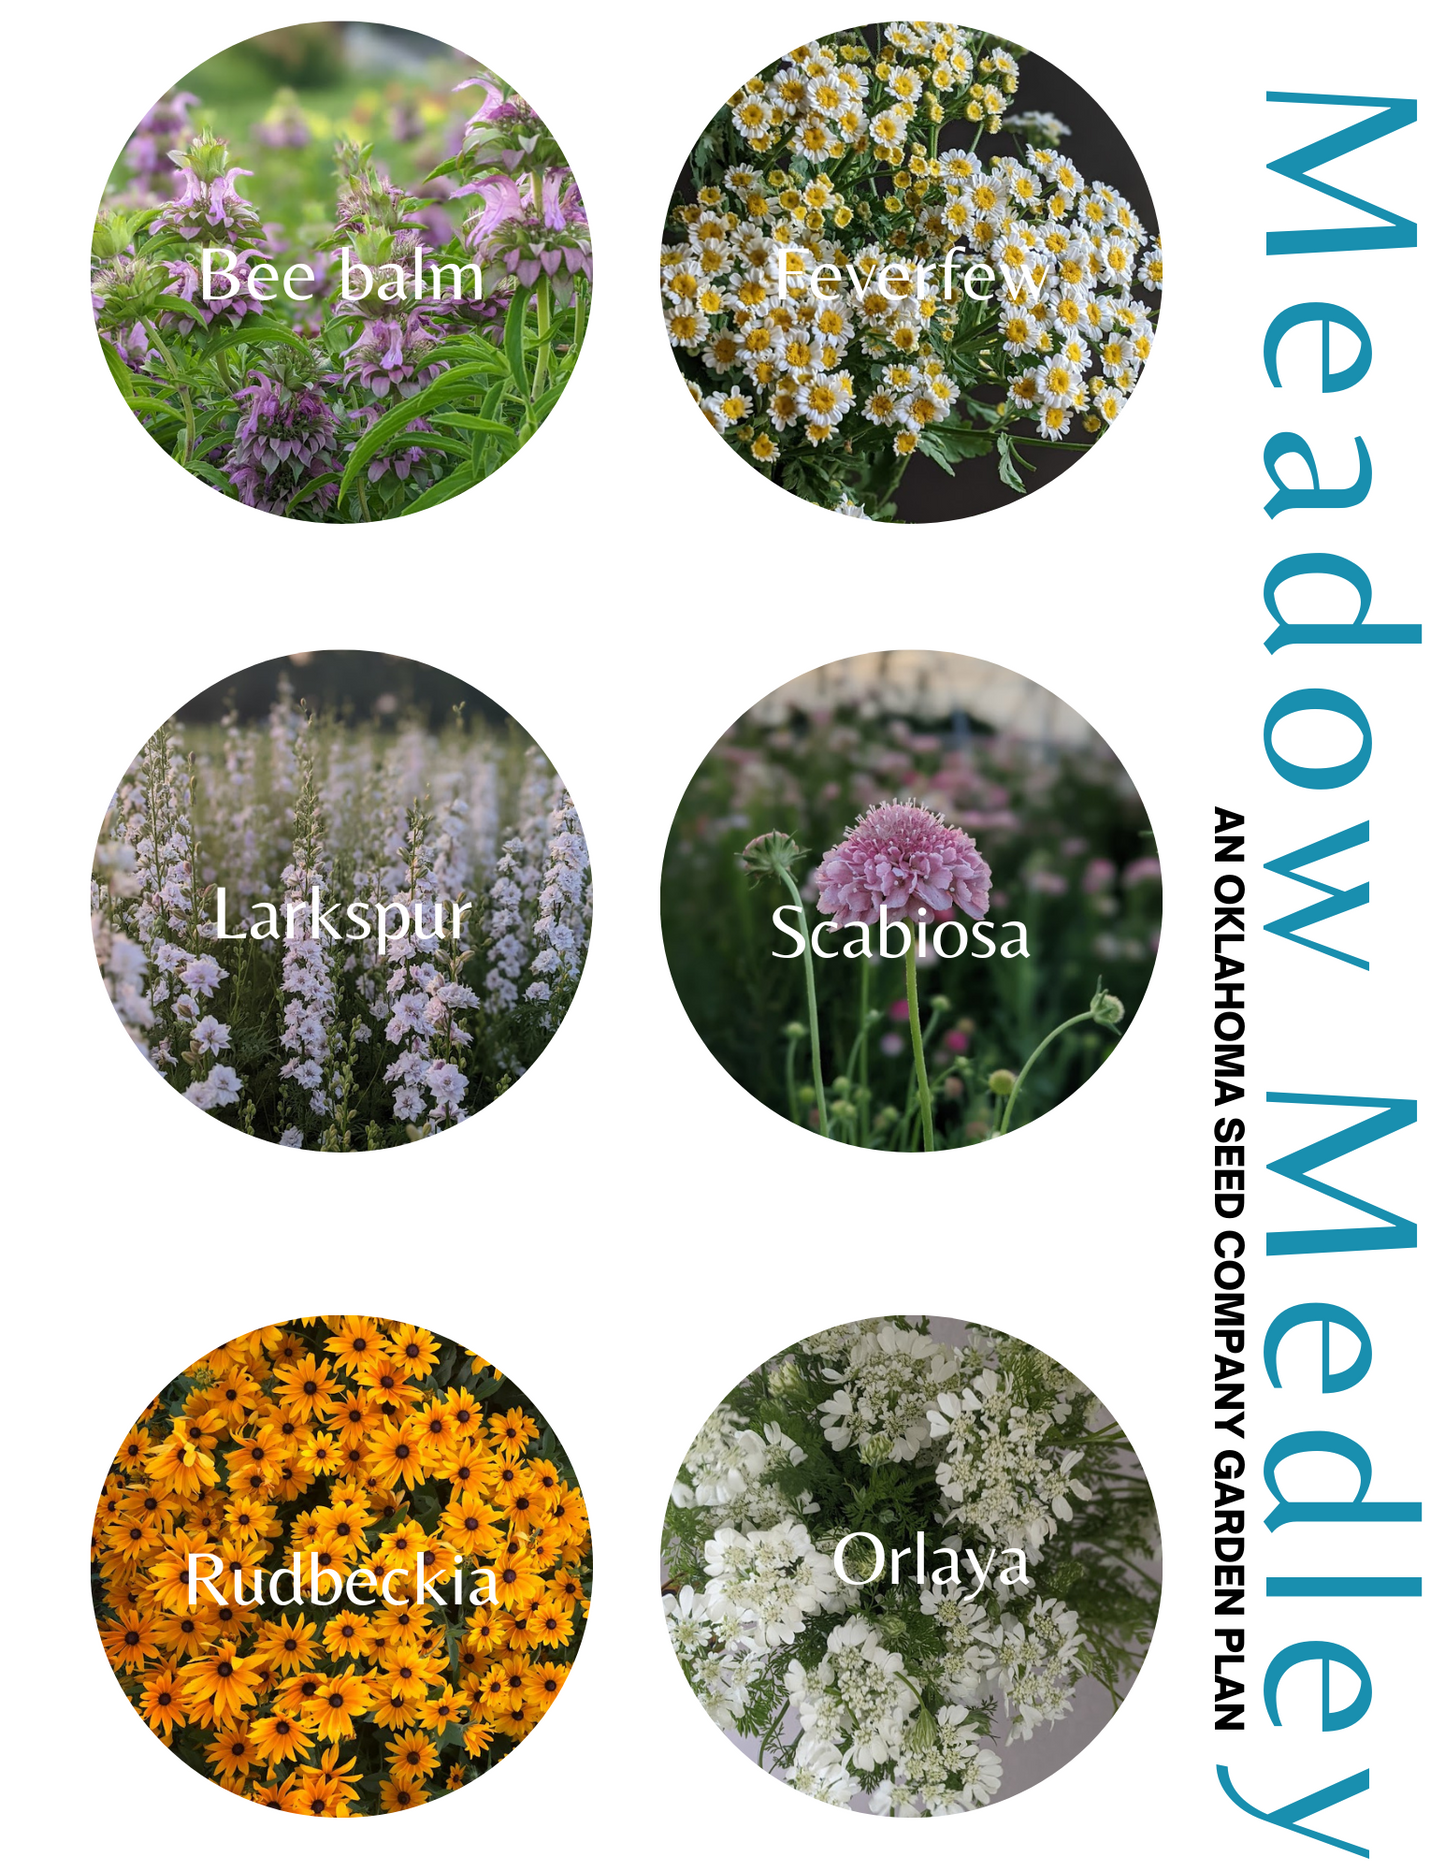 Meadow Medley Garden Plan - Printable (FREE!)